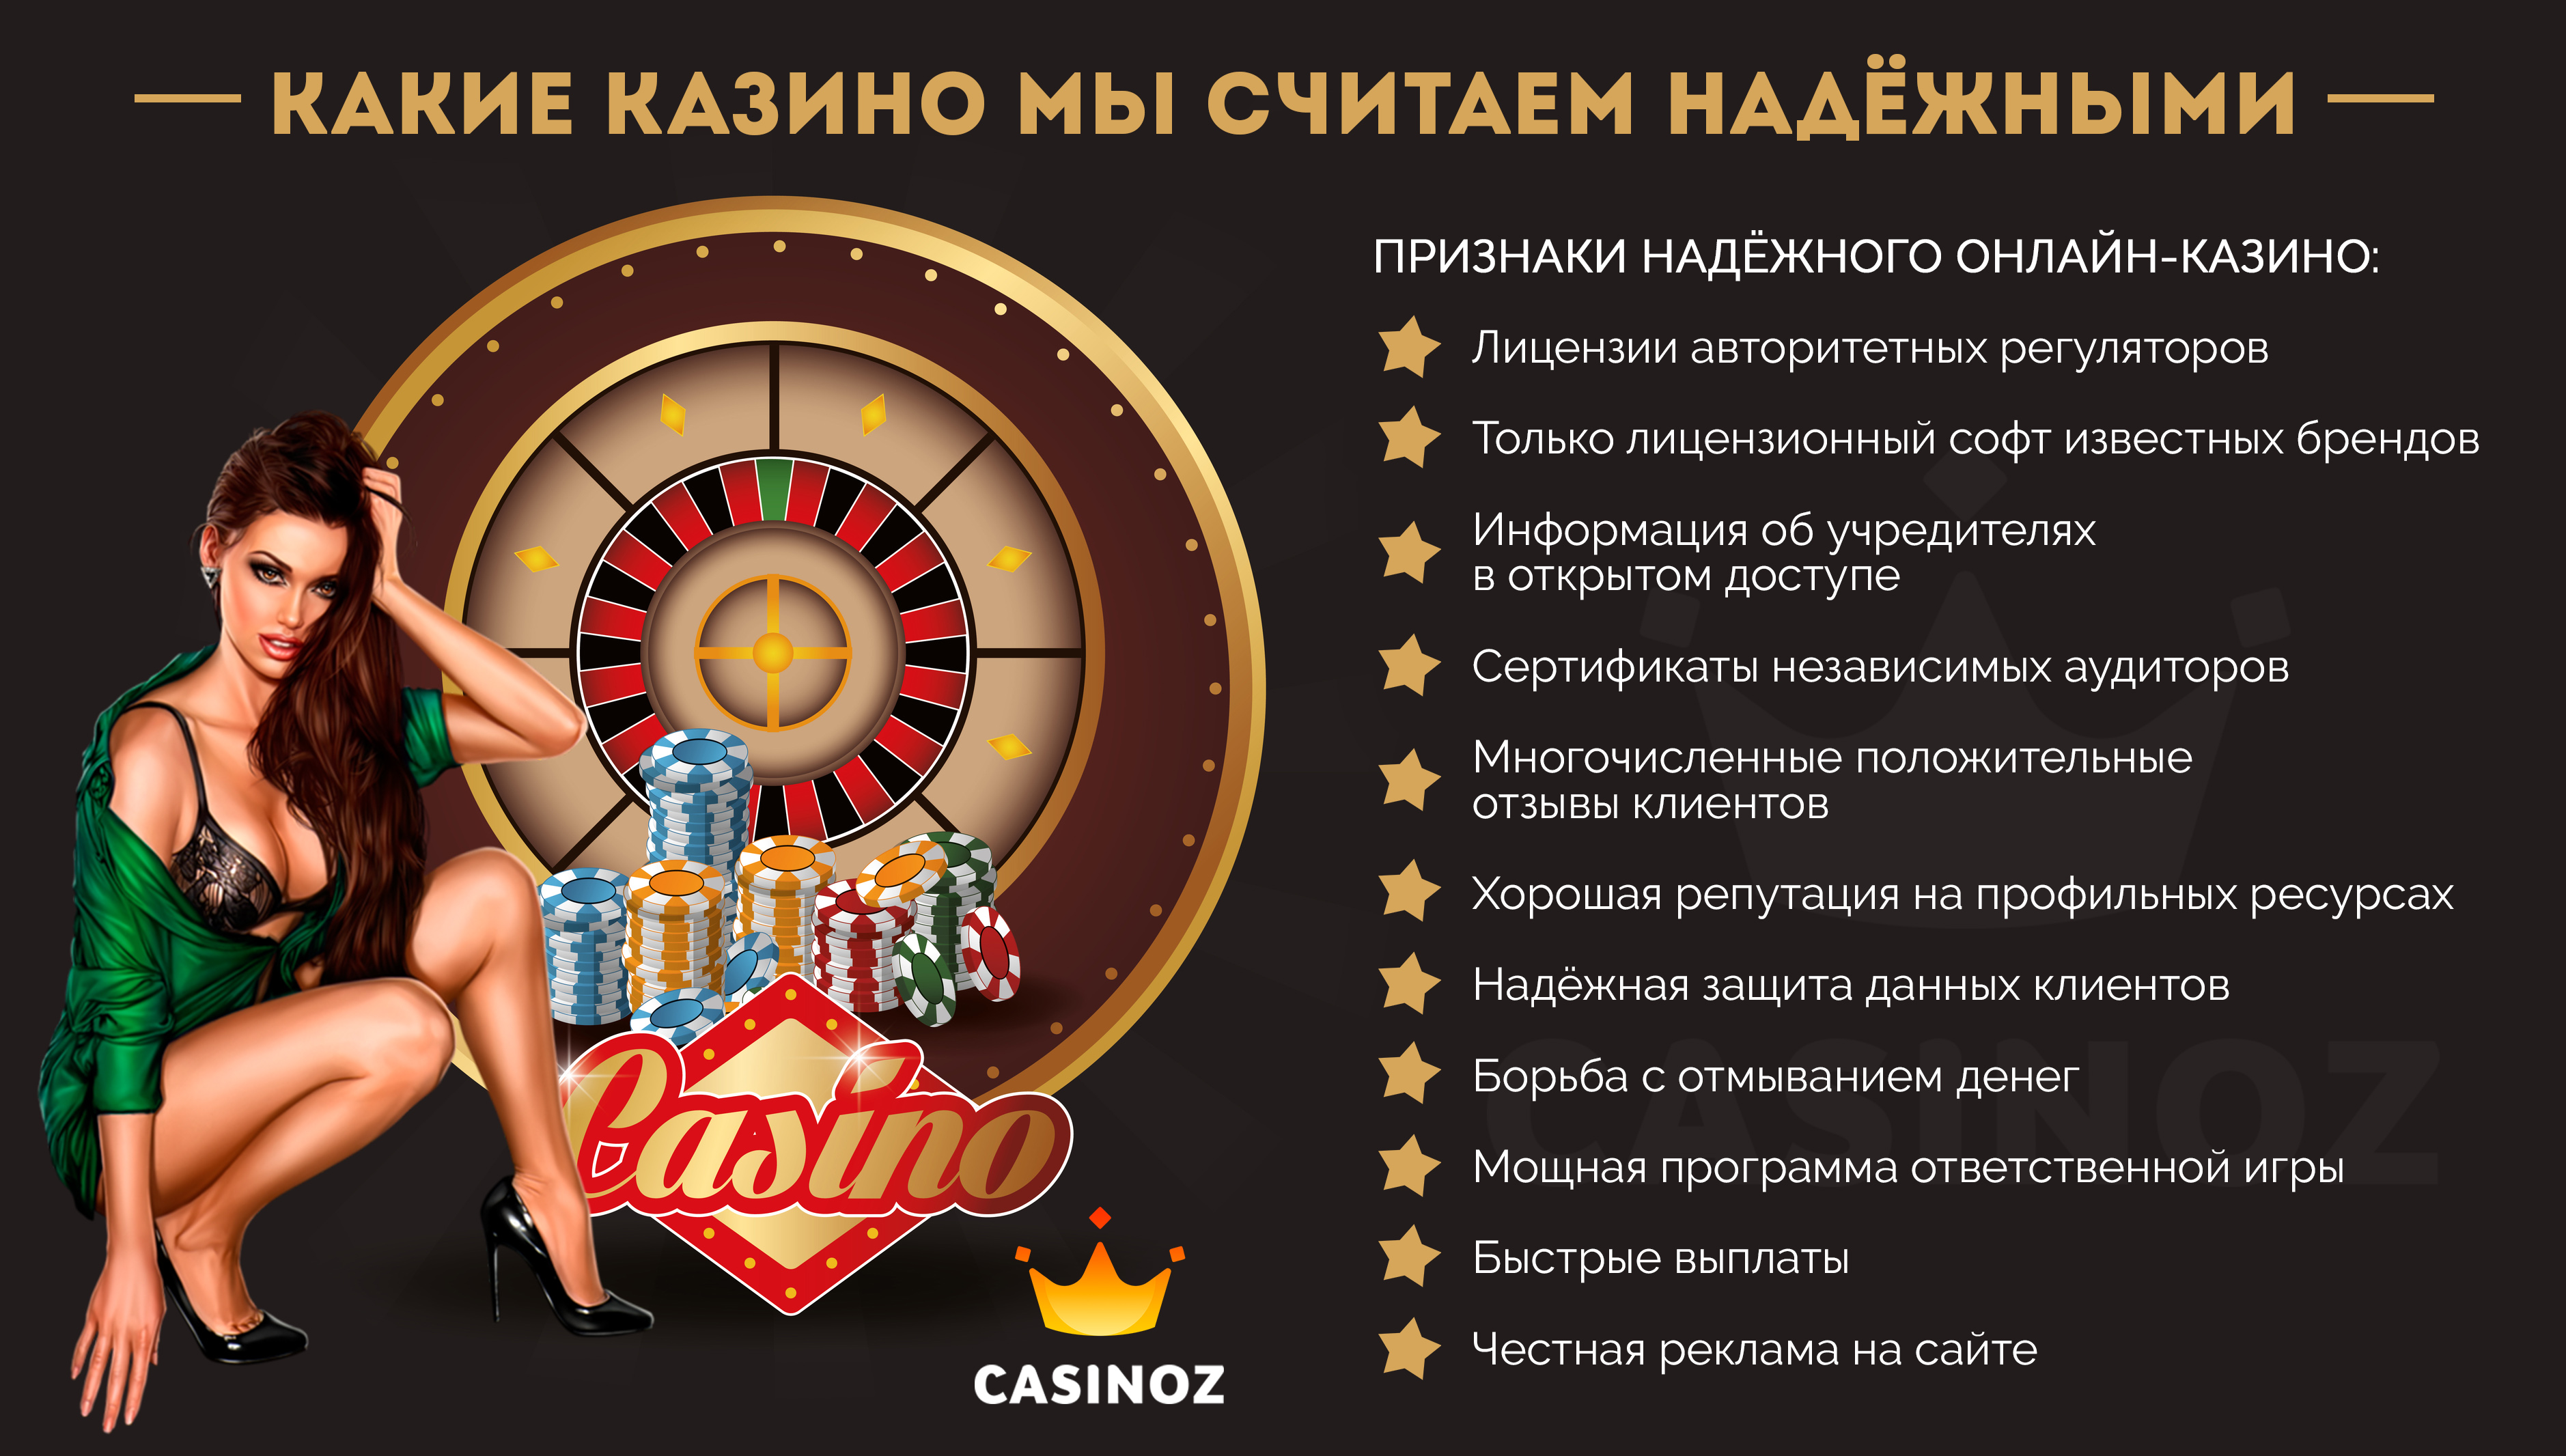 Какой онлайн казино лицензионный честный и платит casino admiral 777